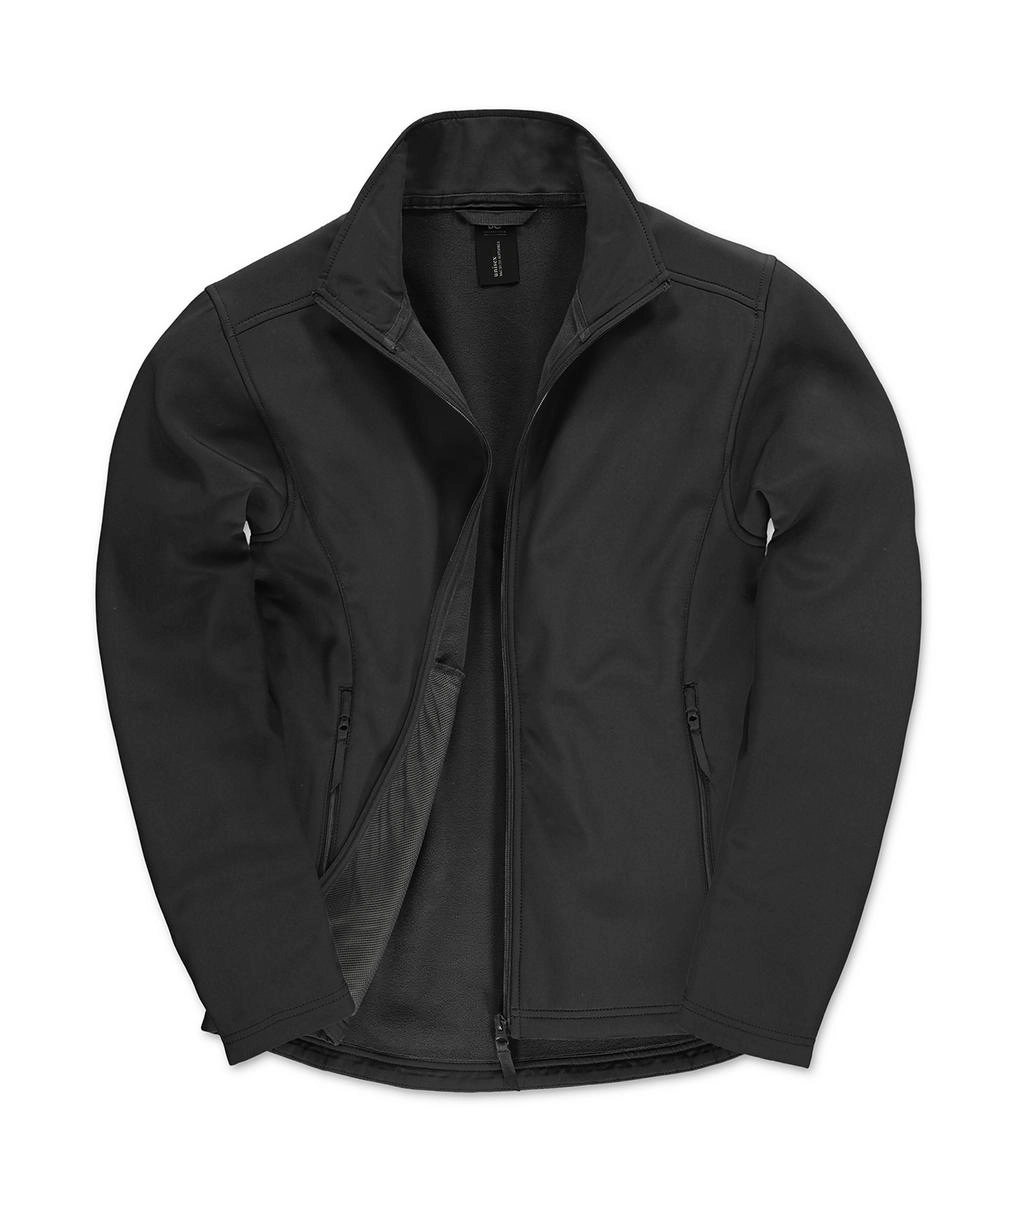 ID.701 Softshell Jacket zum Besticken und Bedrucken in der Farbe Black/Black mit Ihren Logo, Schriftzug oder Motiv.